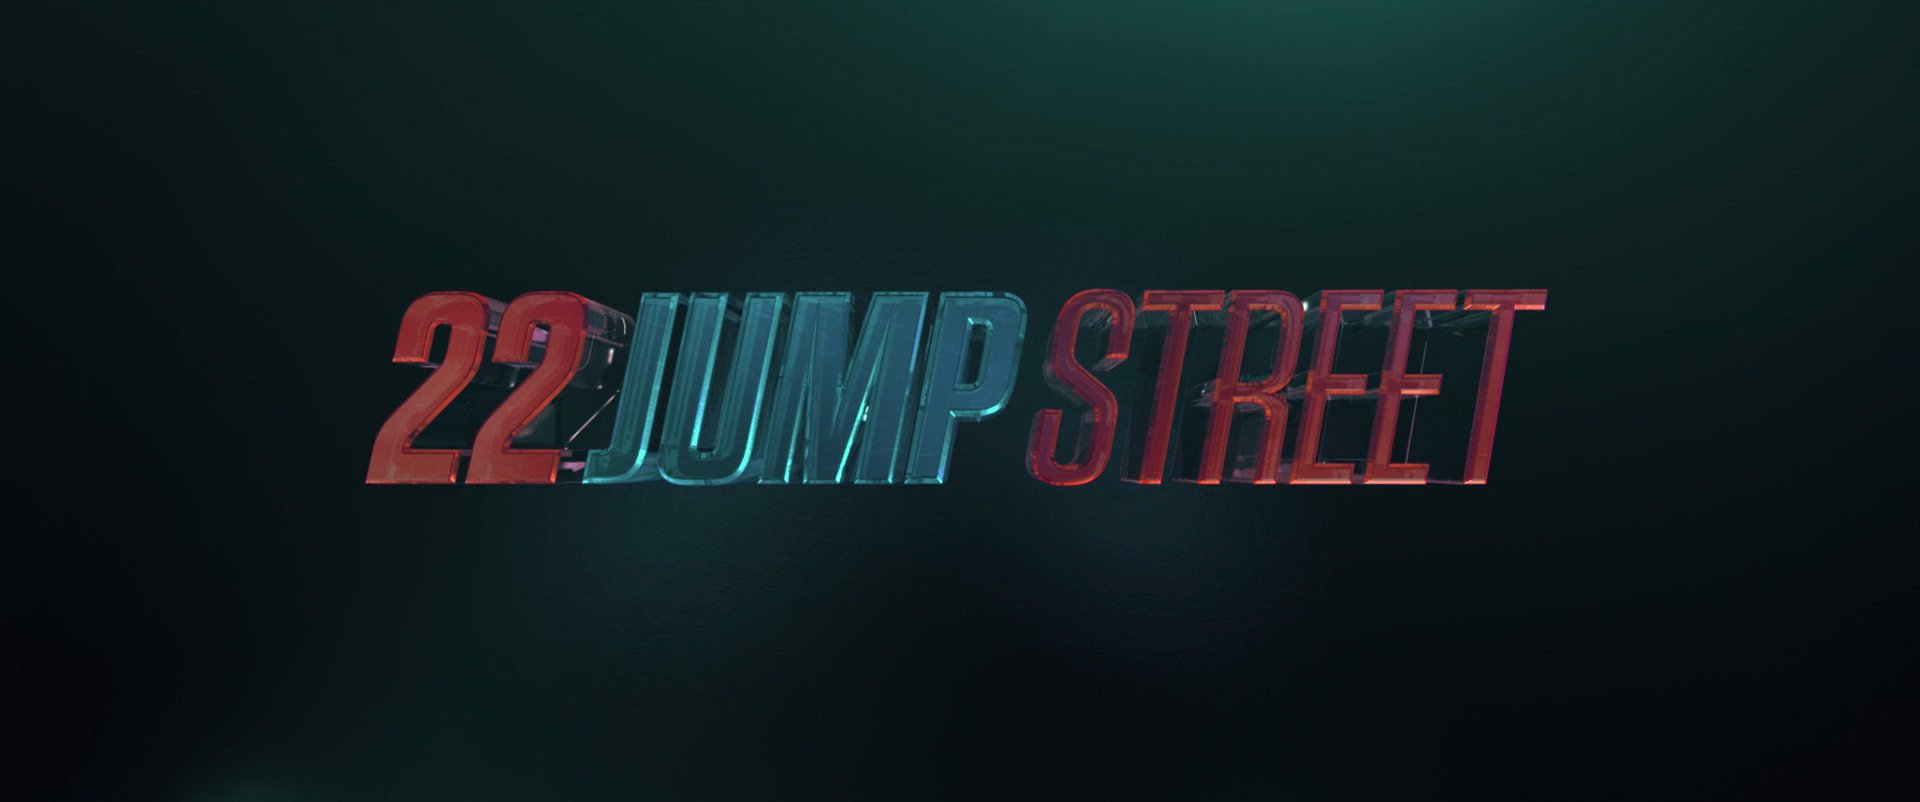 22 jump street full movie megashar